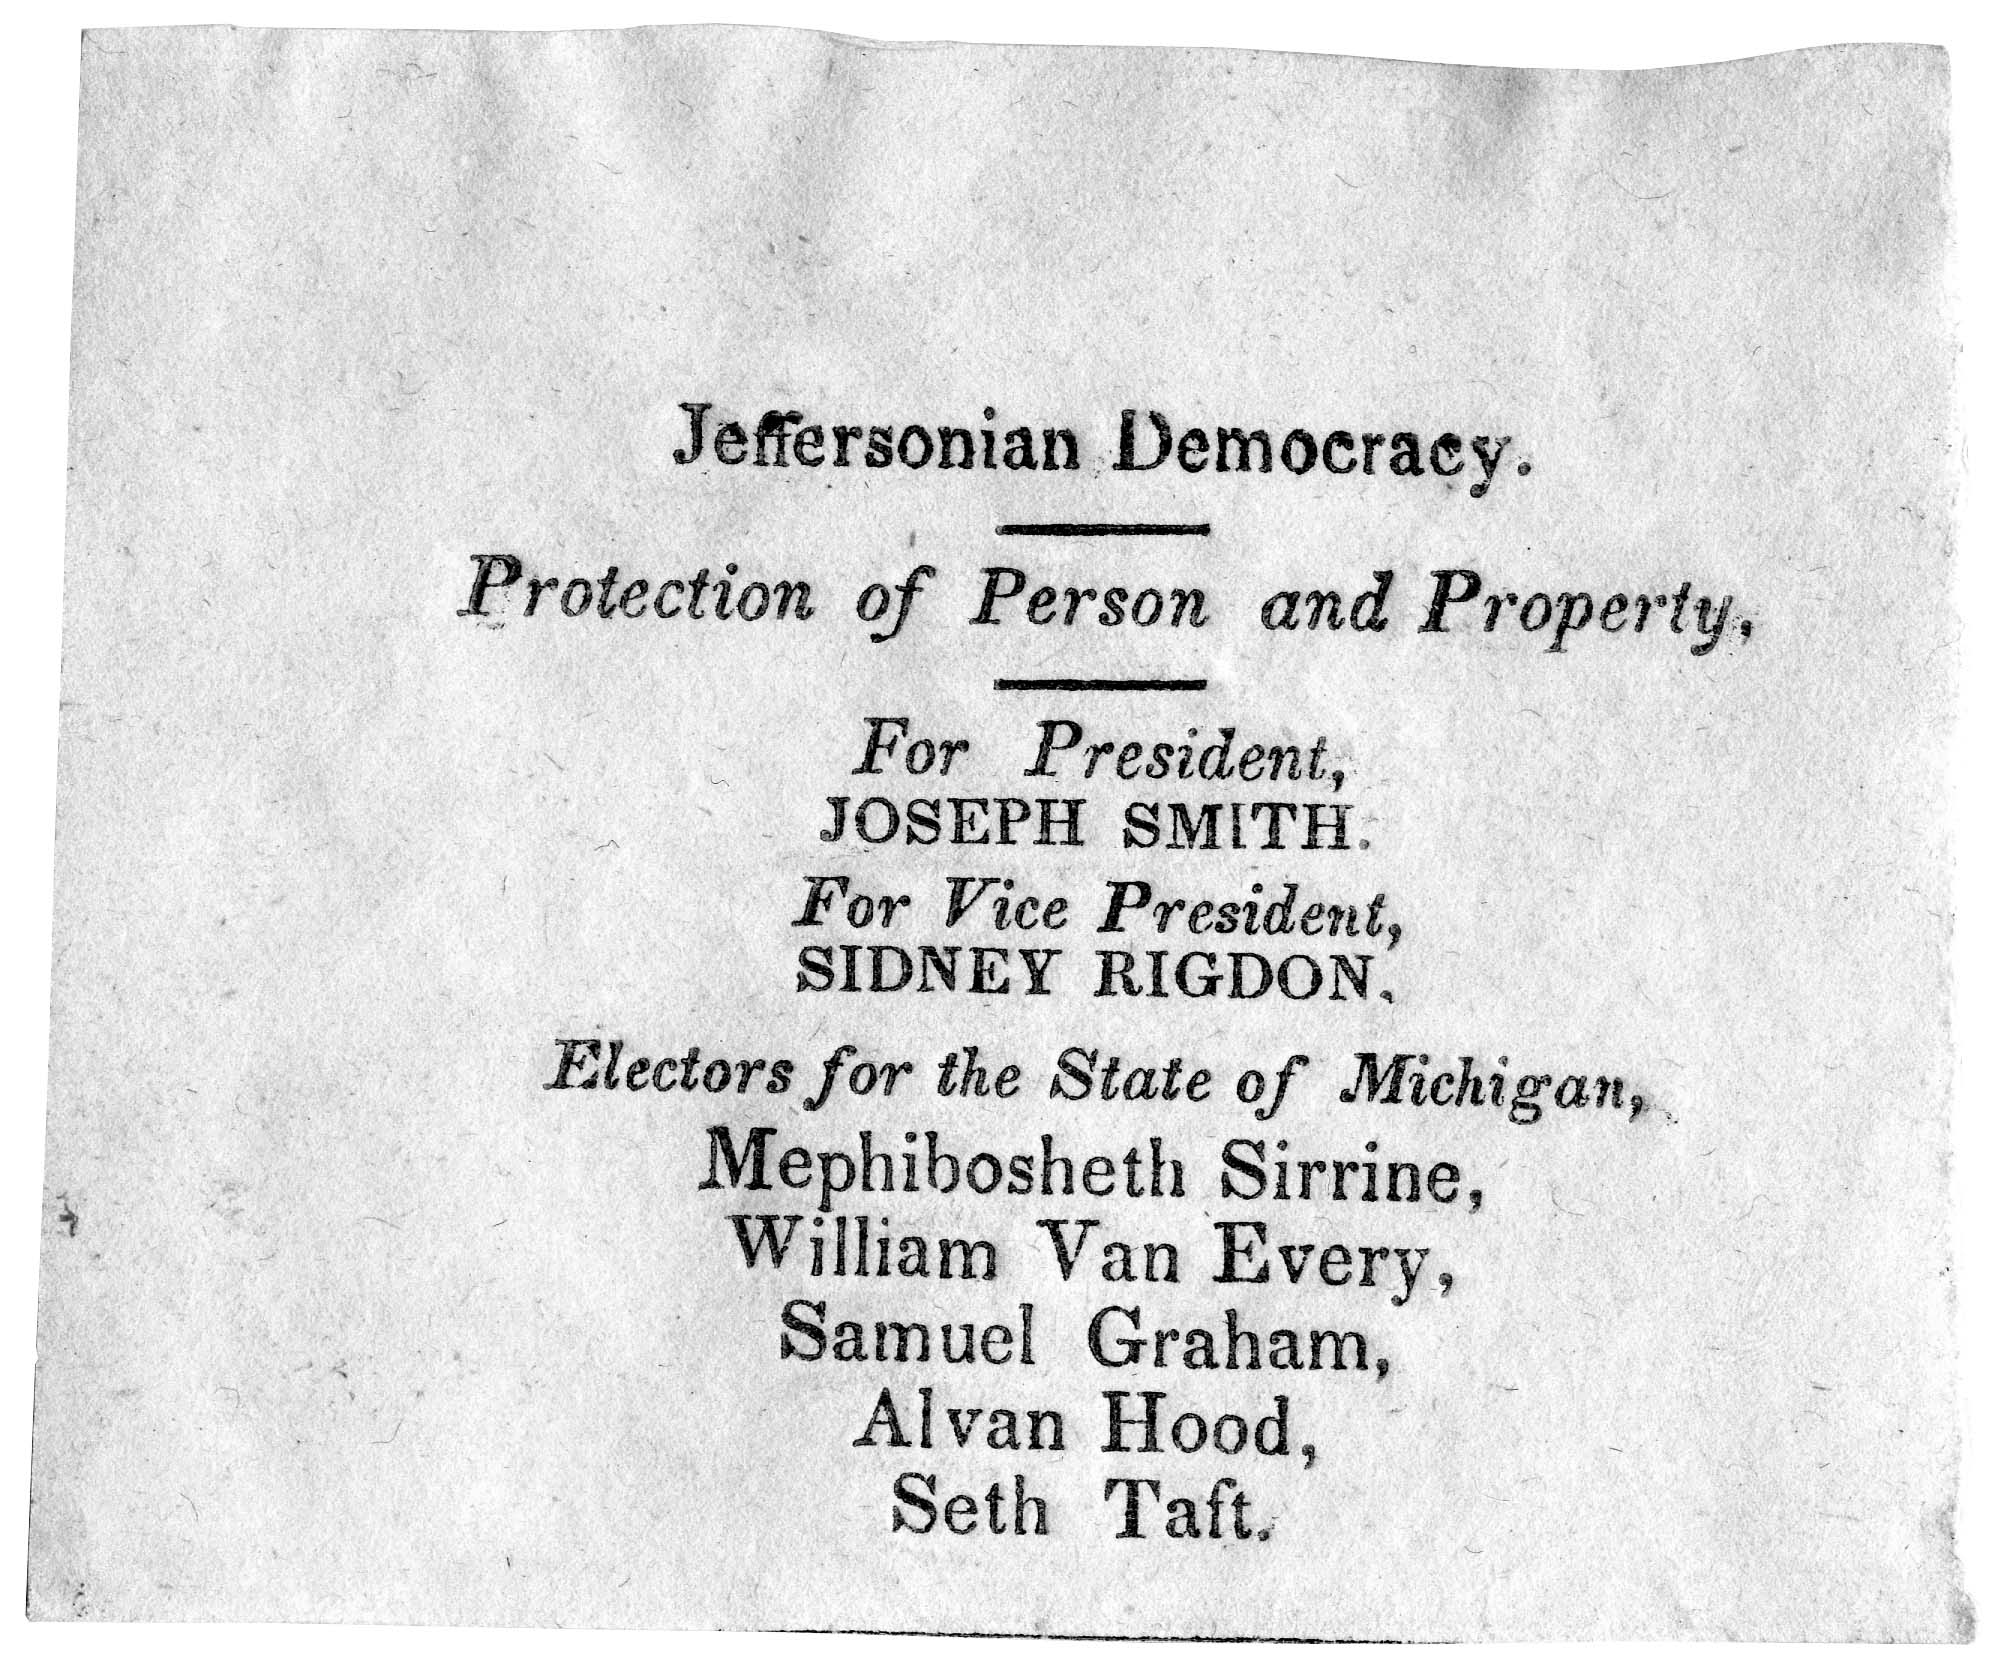 Joseph Smith campaign ticket